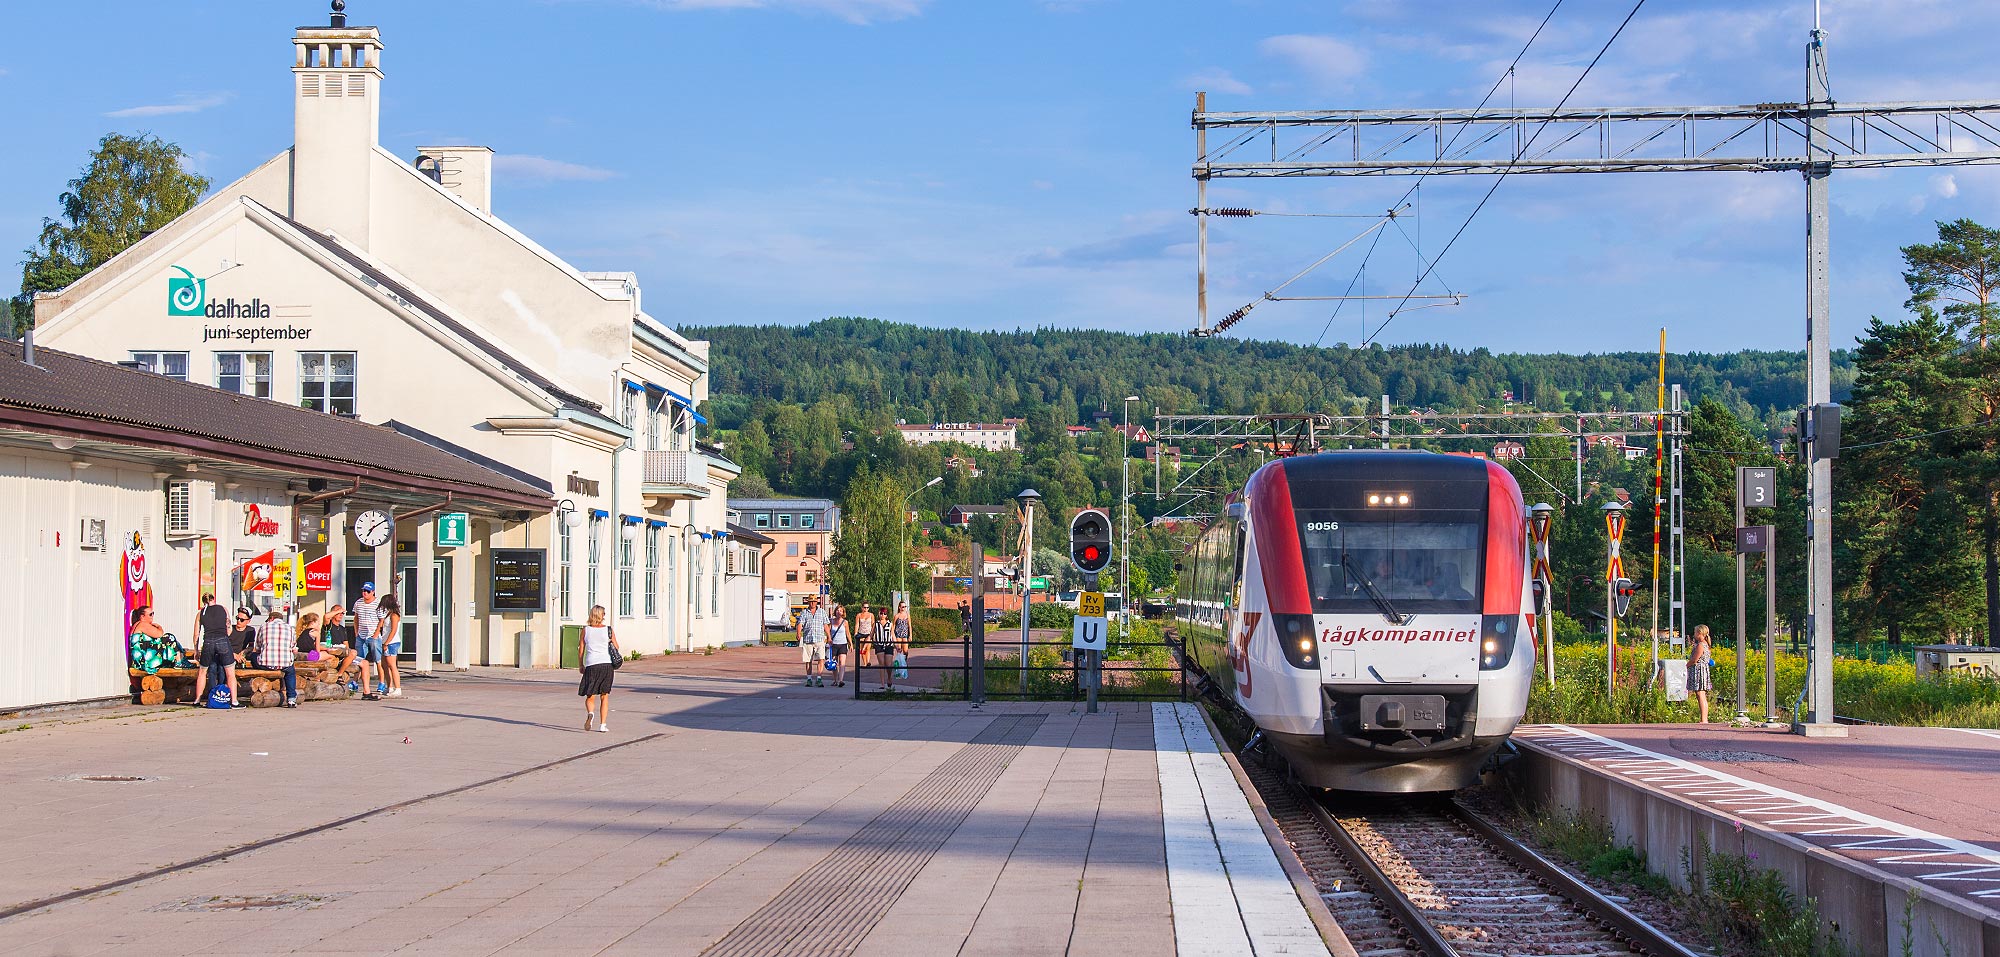 Bild: Tåg mot Mora stannar till i Rättvik 2014